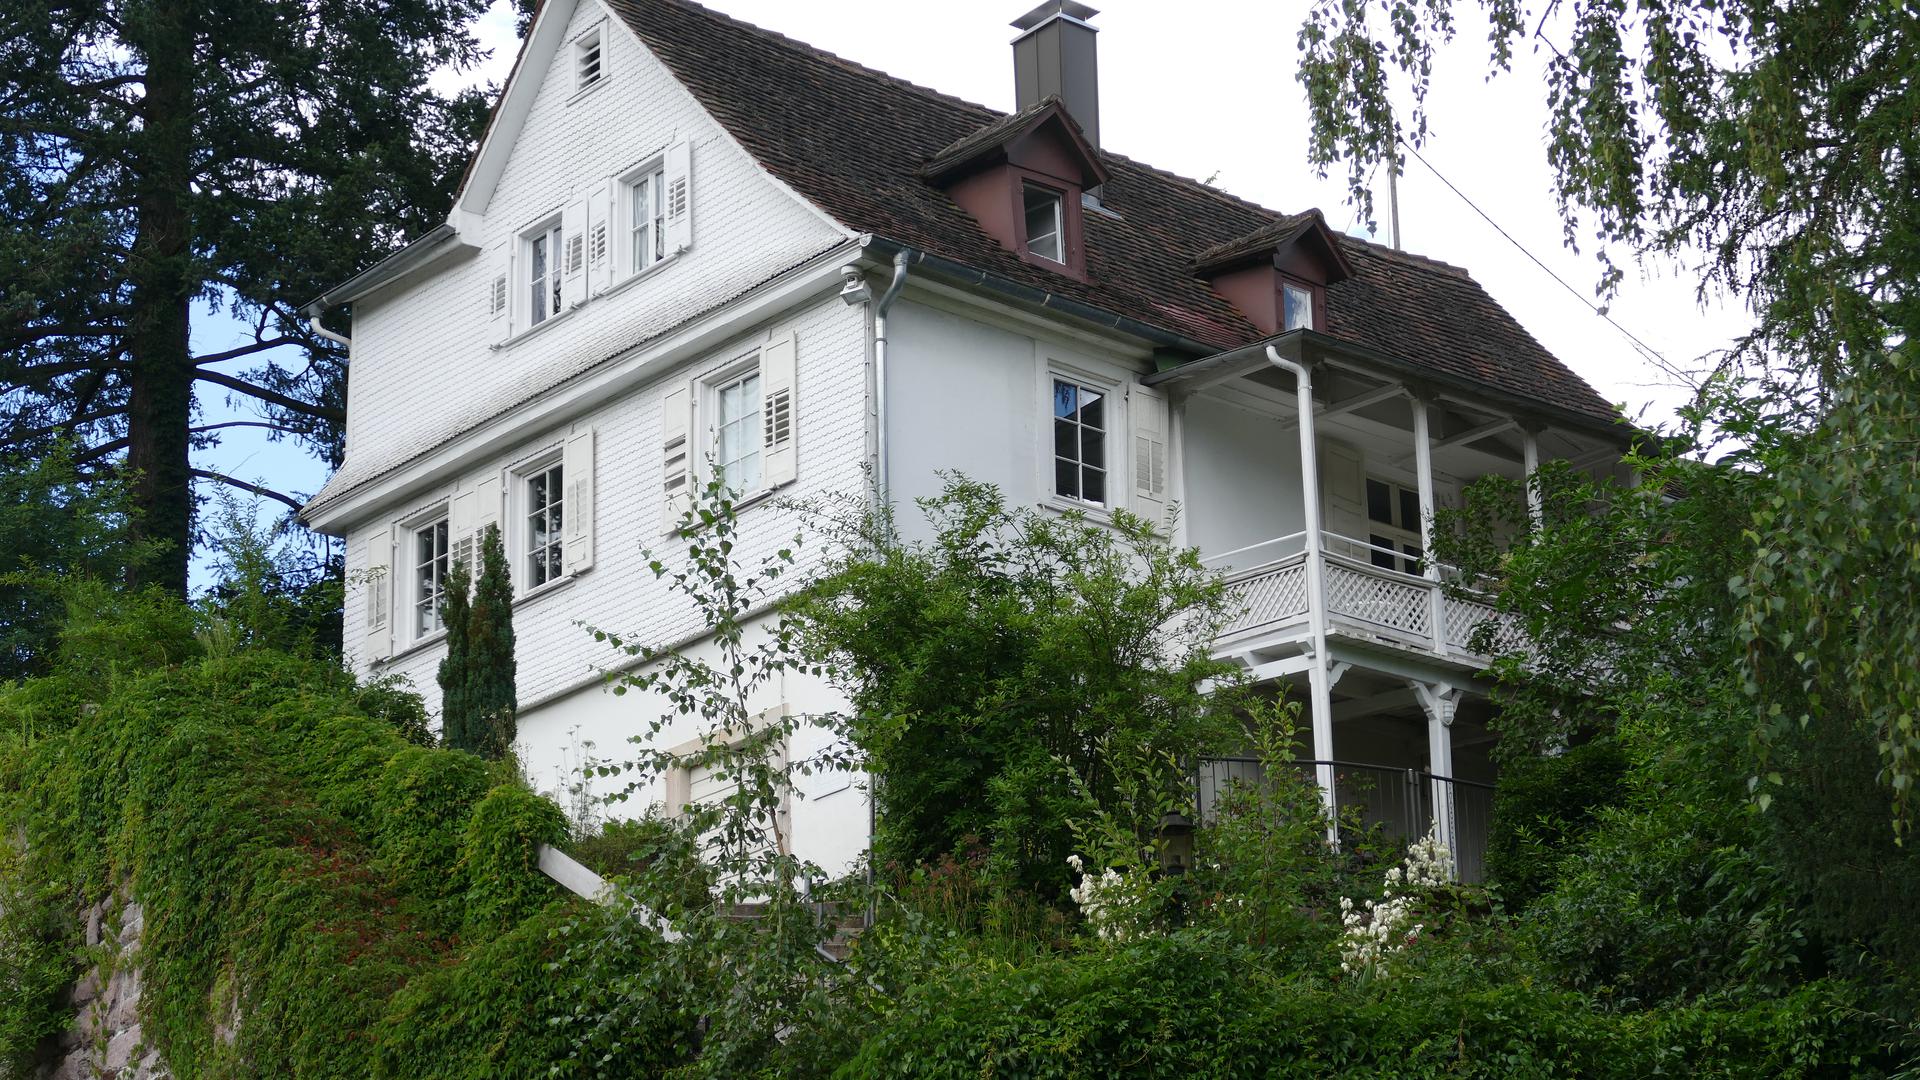 Das Haus in der Maximilianstraße 85, in dem Johannes Brahms einige Sommer lang wohnte, ist heute ein Brahmsmuseum.